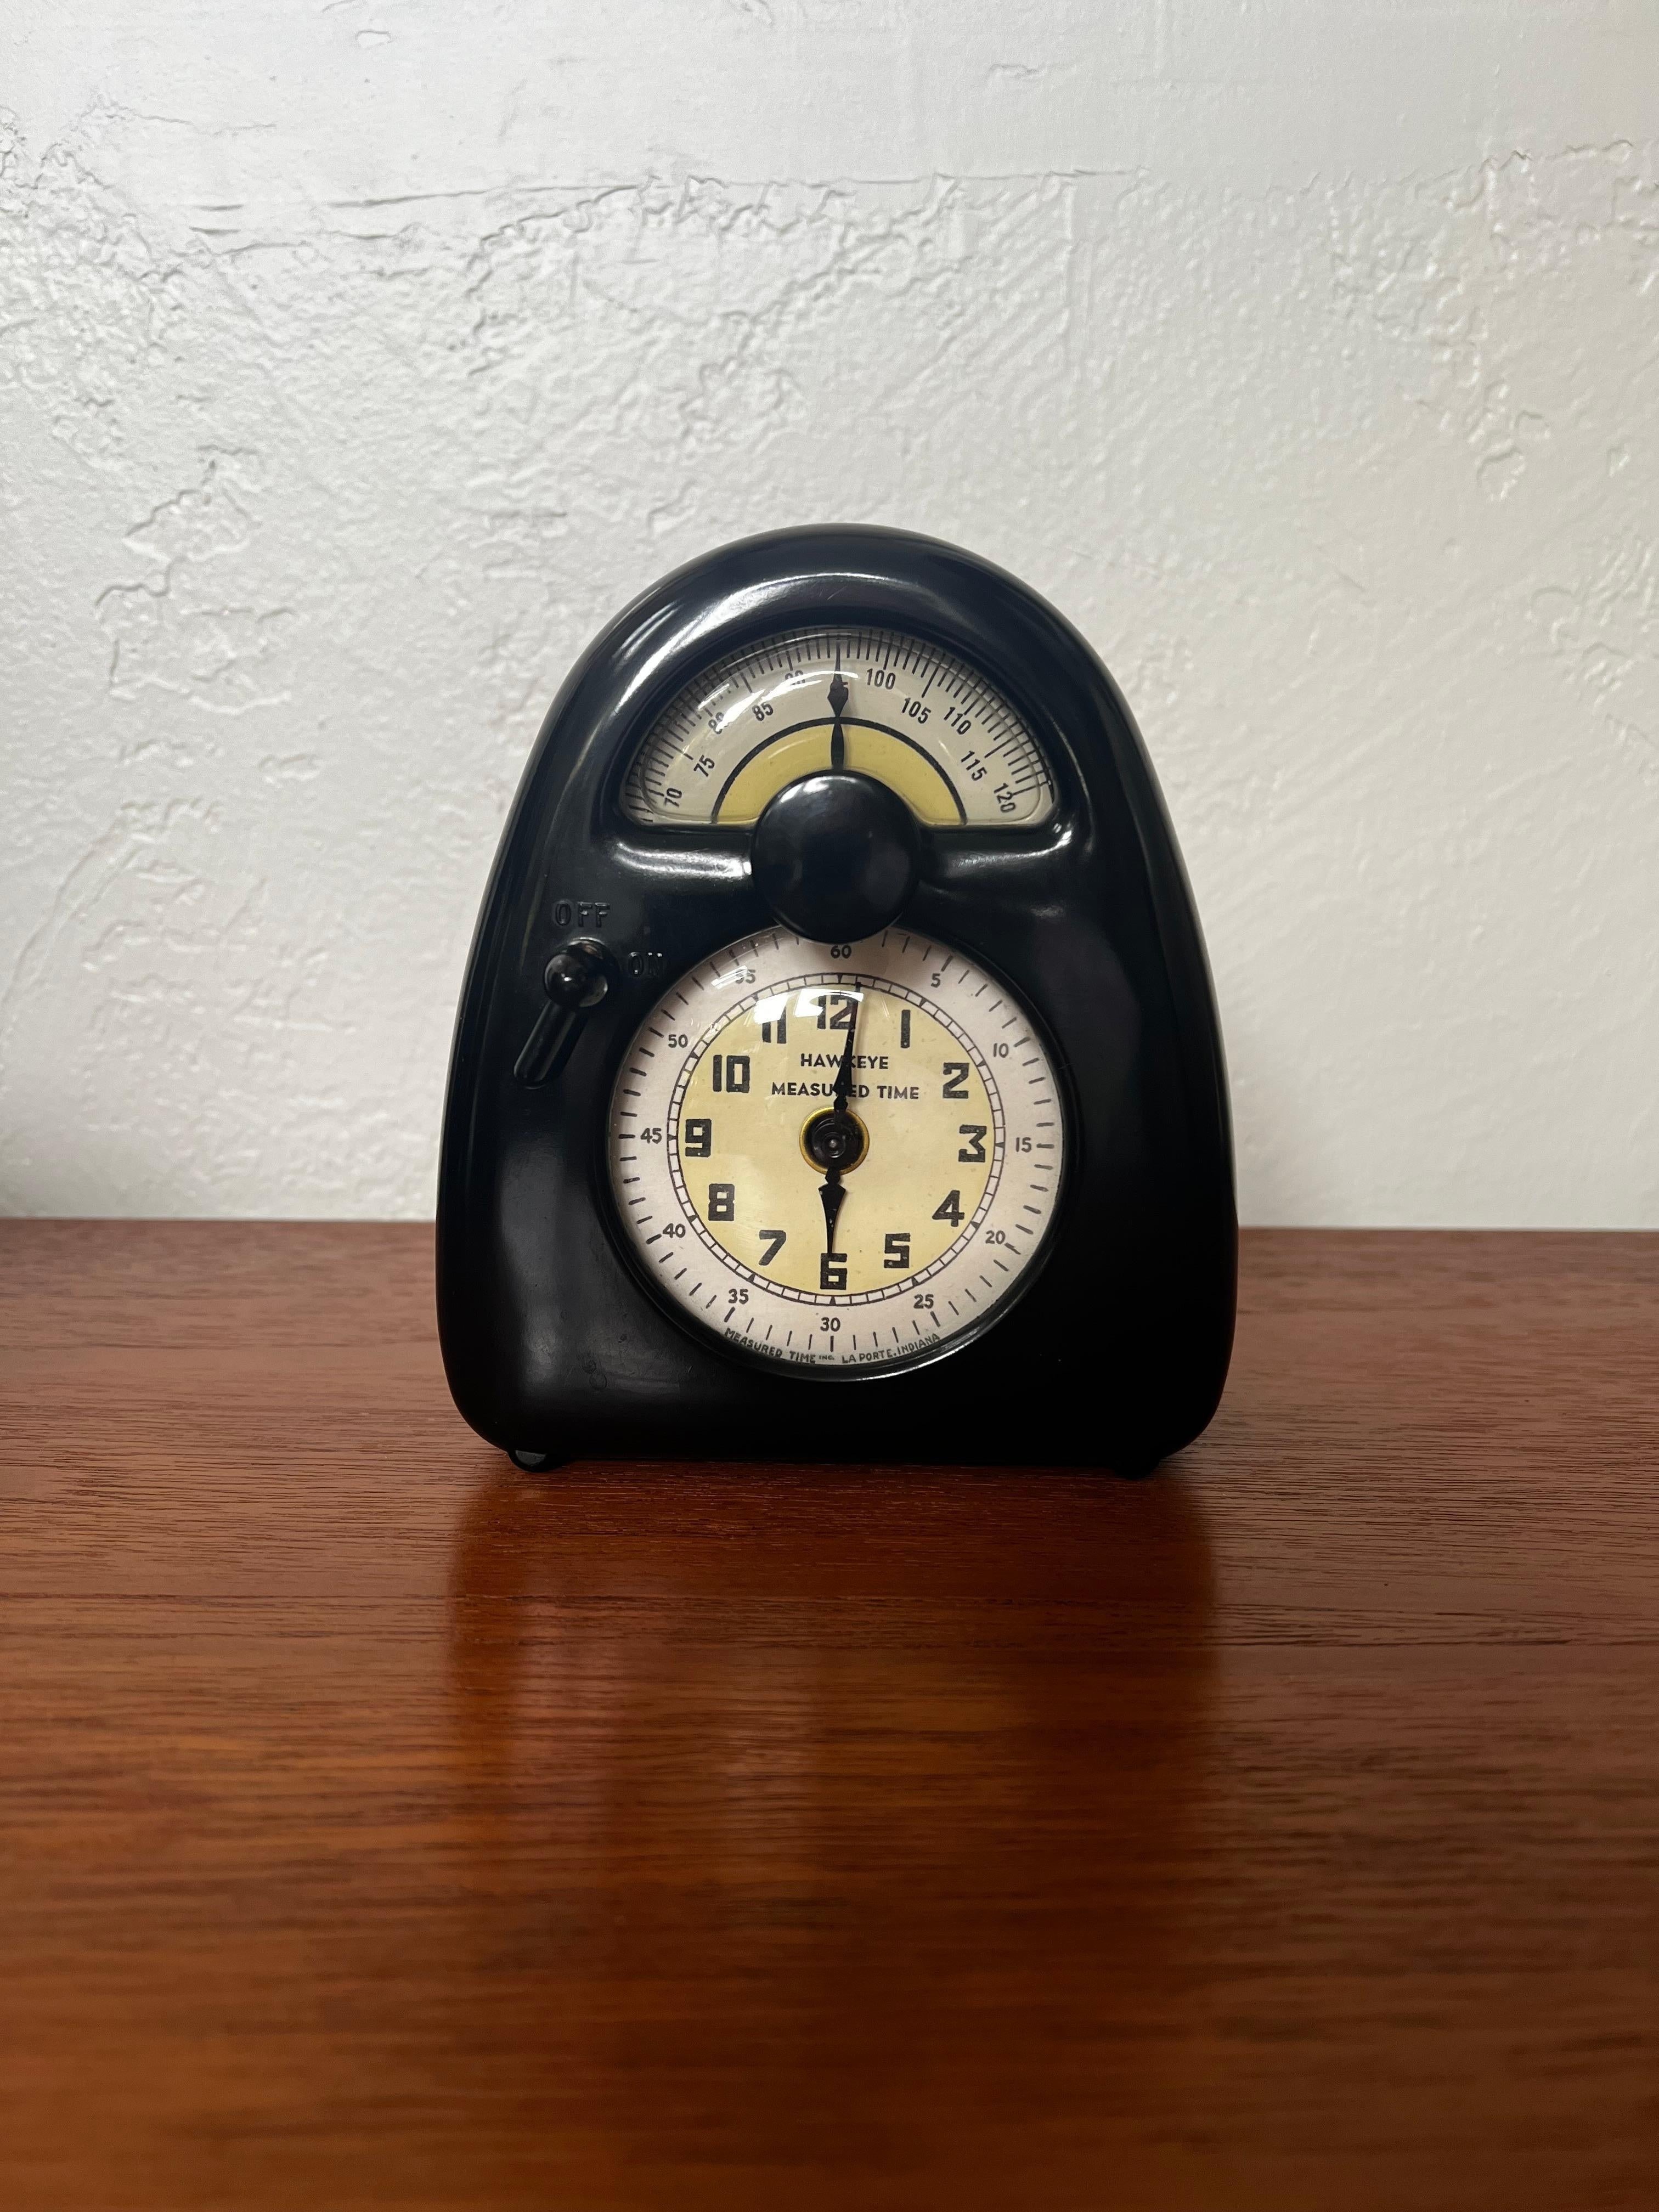 Le chronomètre Hawkeye Measure Time Clock Timer, chef-d'œuvre d'Isamu Noguchi, est un témoignage à la fois de la forme et de la fonction. En parfait état de marche, ce joyau de l'horlogerie a fait l'objet d'un examen professionnel qui en garantit la